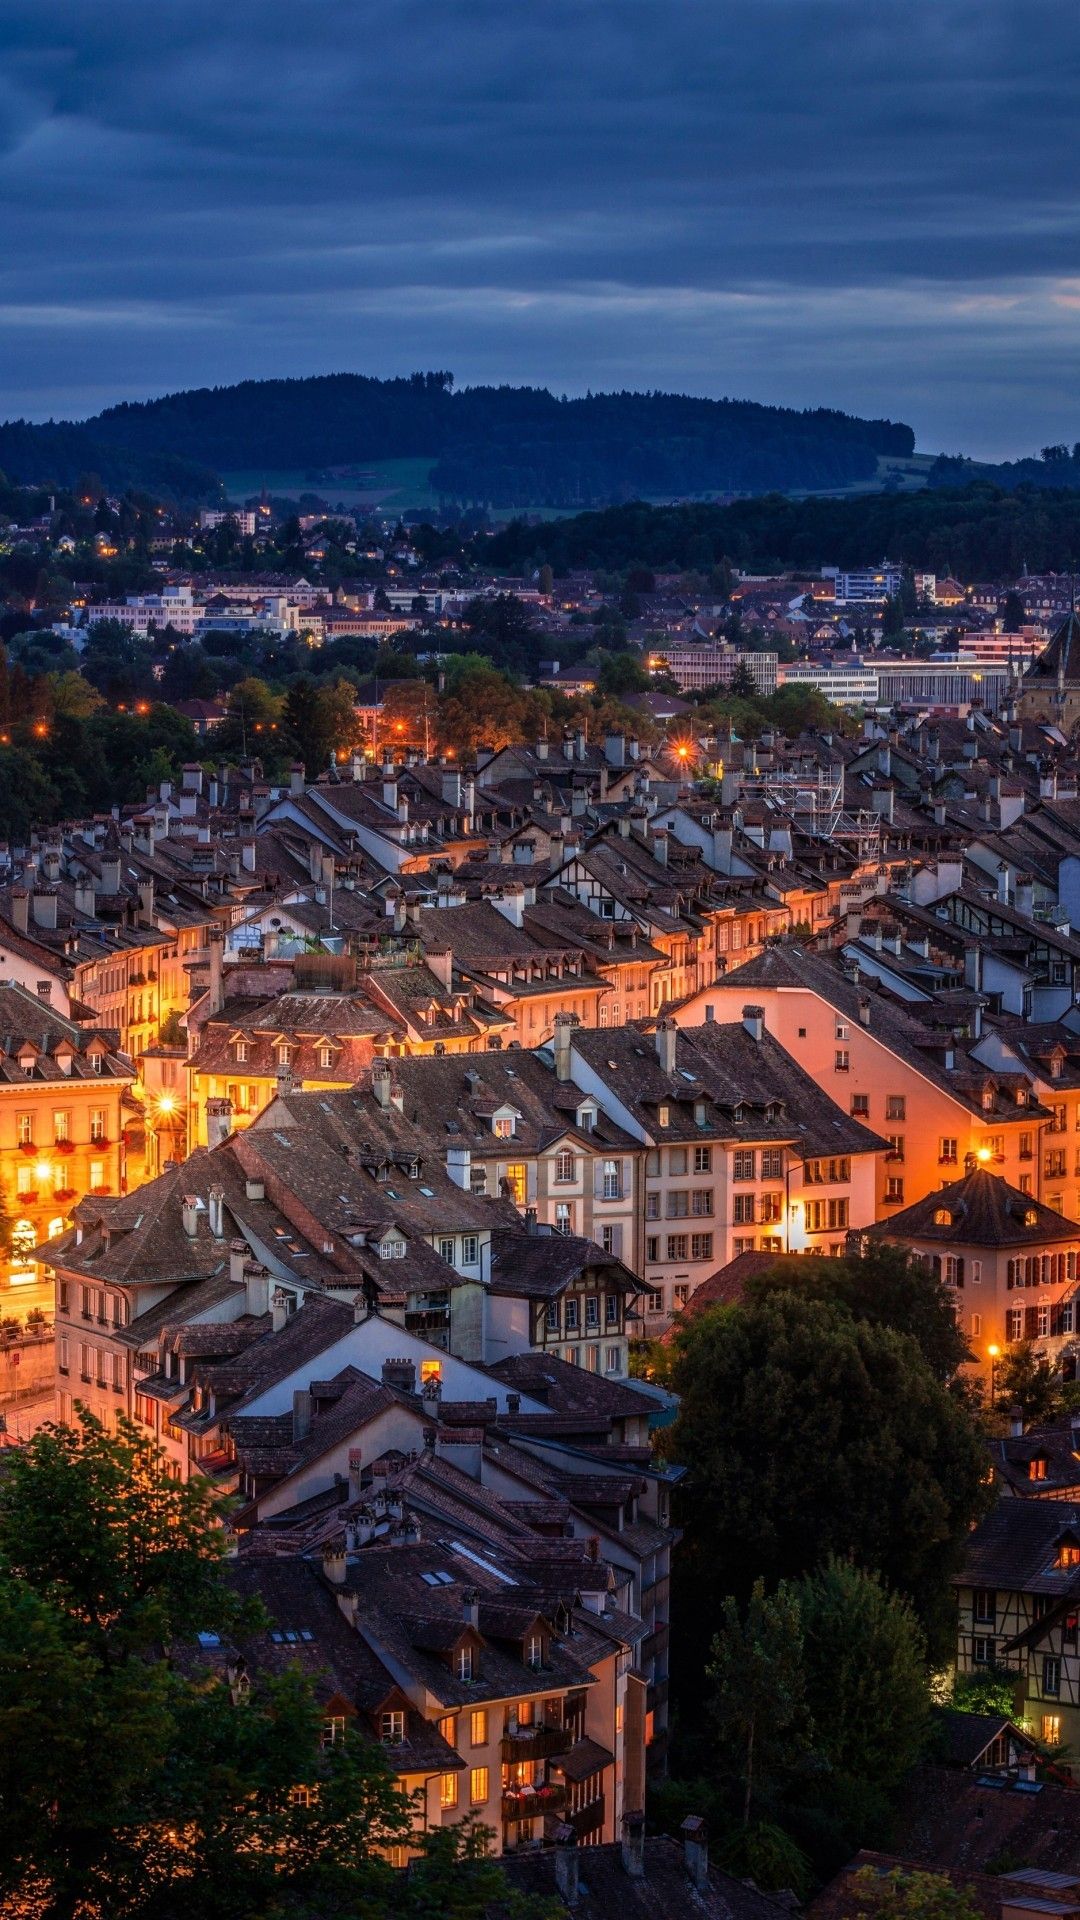 تصویر زمینه جالب IPhone از شهر زیبای سوئیس در شب